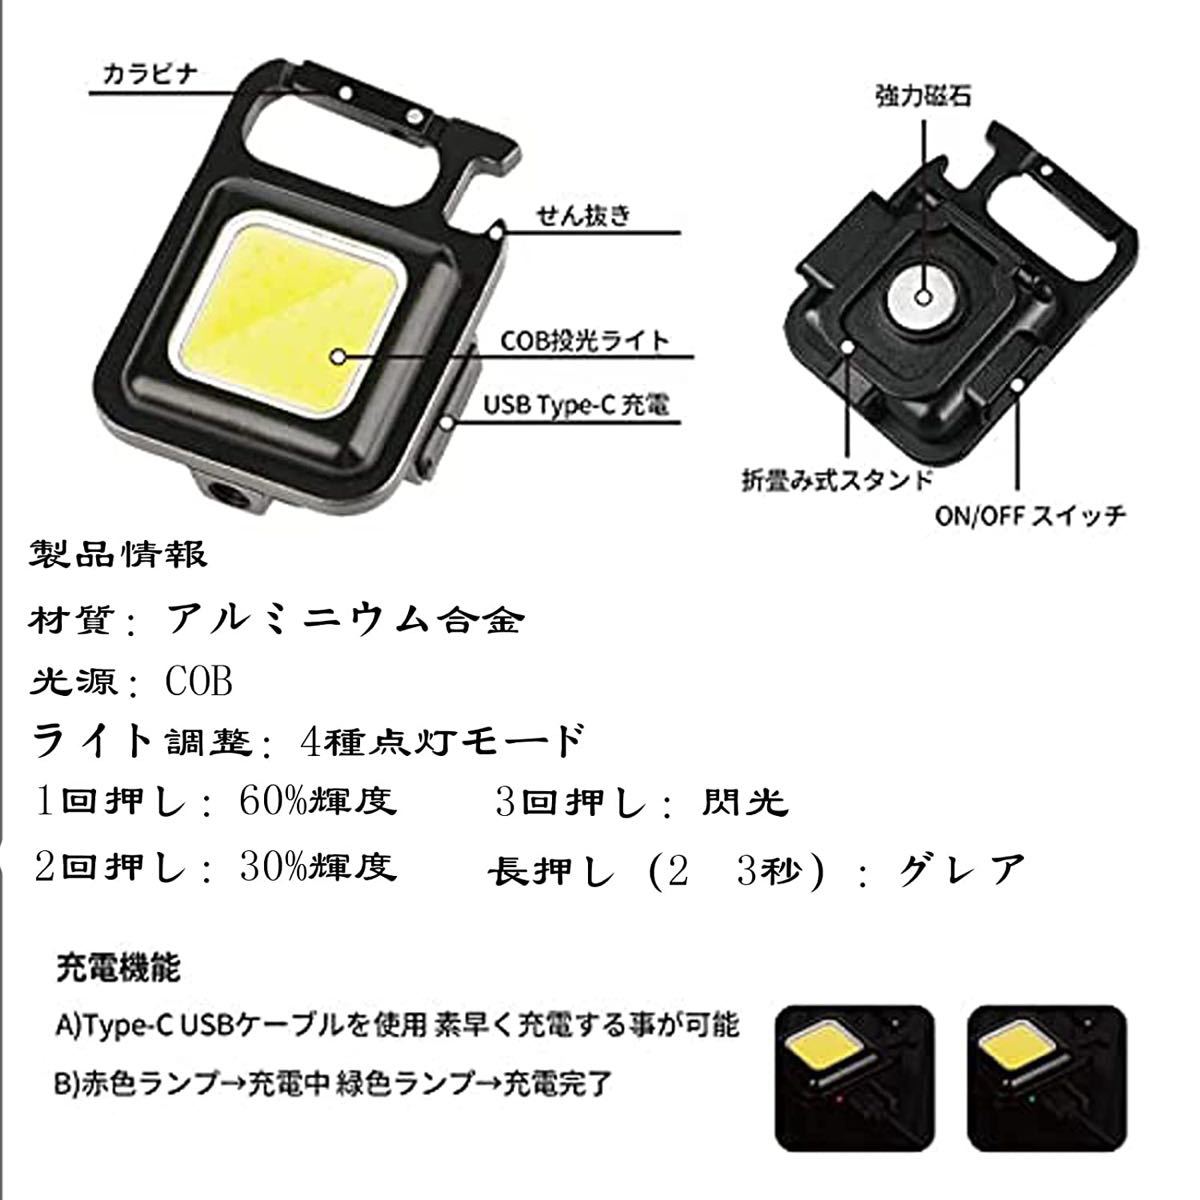 2セットLED 投光器 4モードCOB高輝度磁石 USB充電式 キーホルダー式 小型軽量IPX4防水懐中電灯 緊急照明 アウトドア